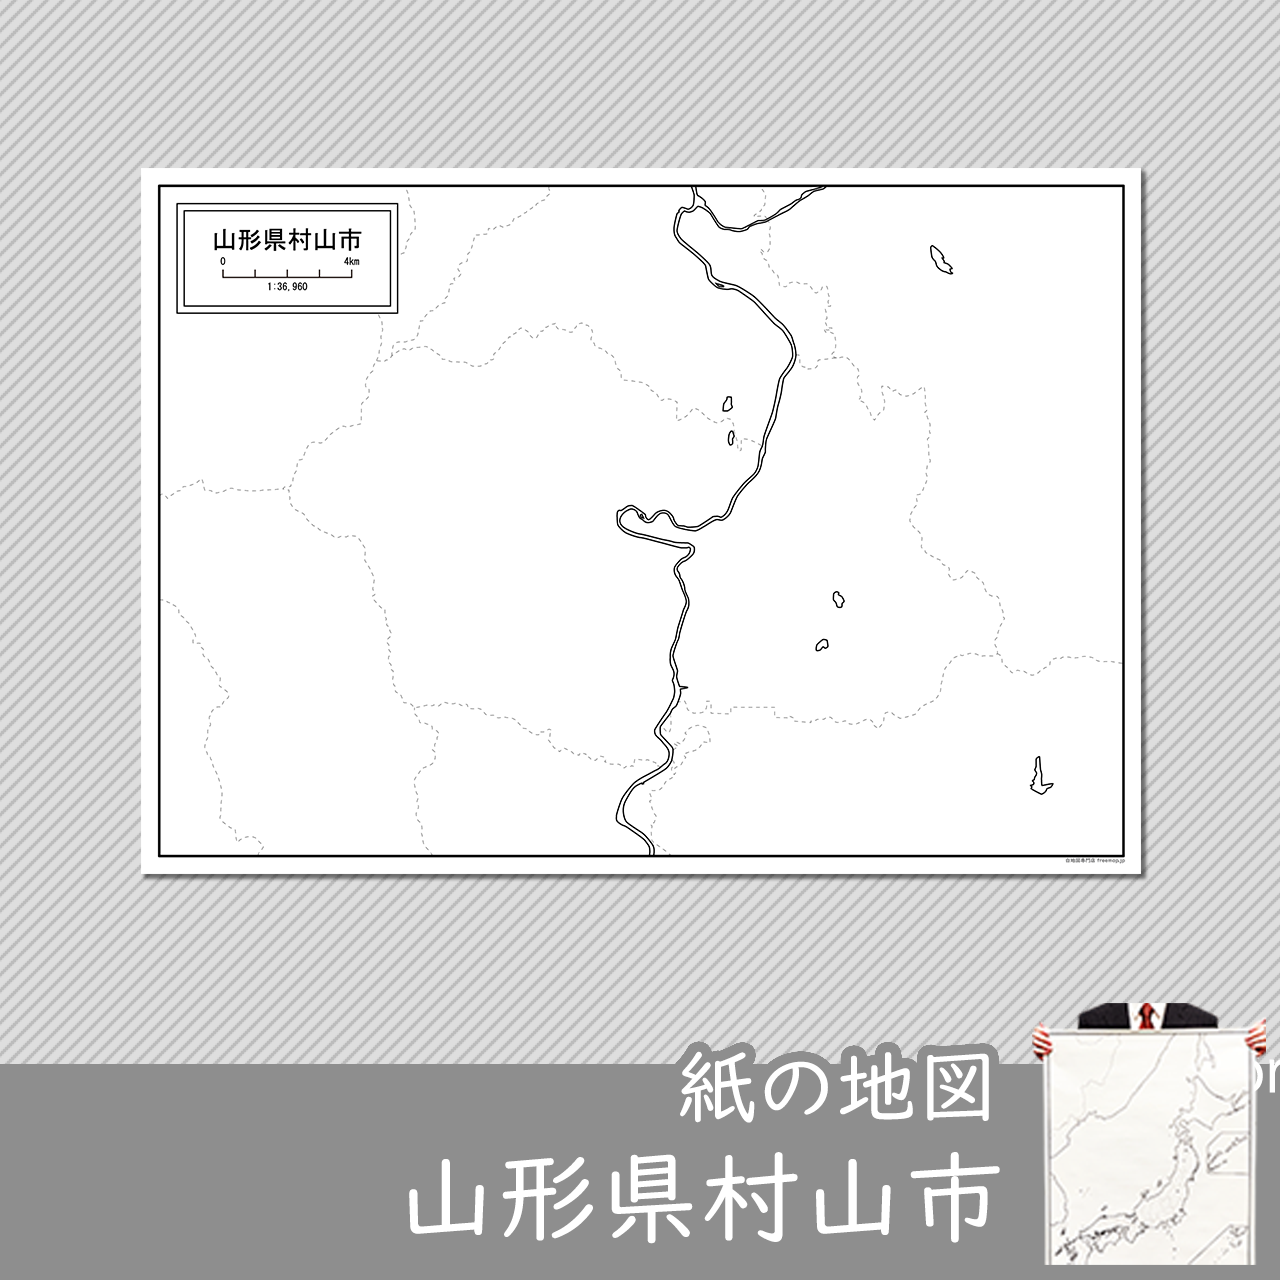 村山市の紙の白地図のサムネイル